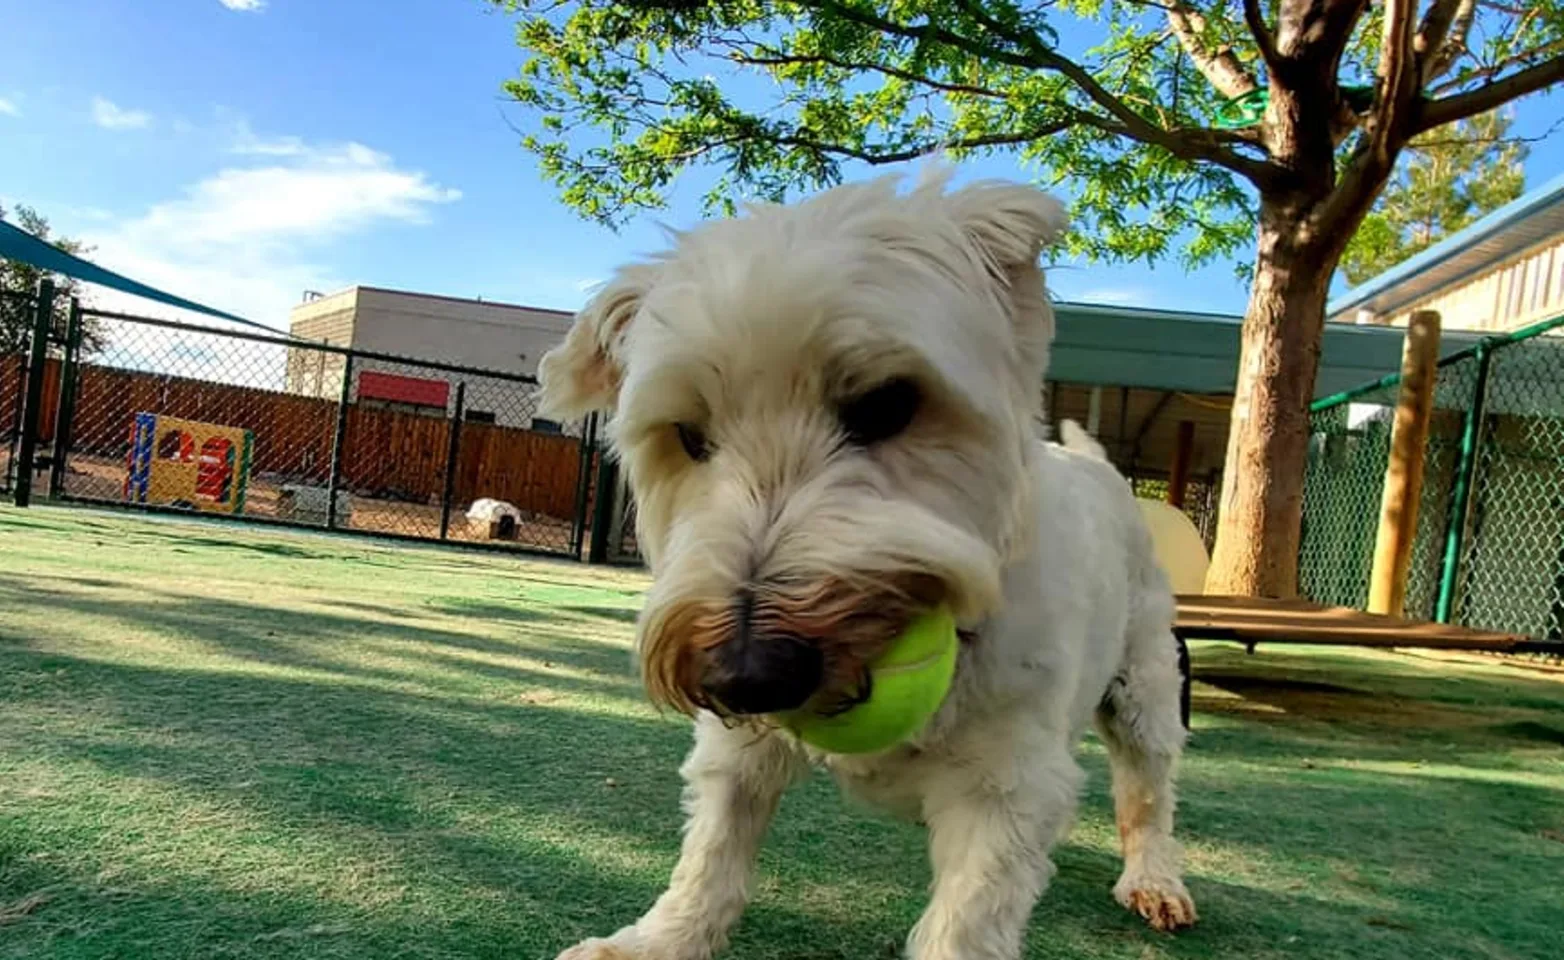 Dog and tennis ball